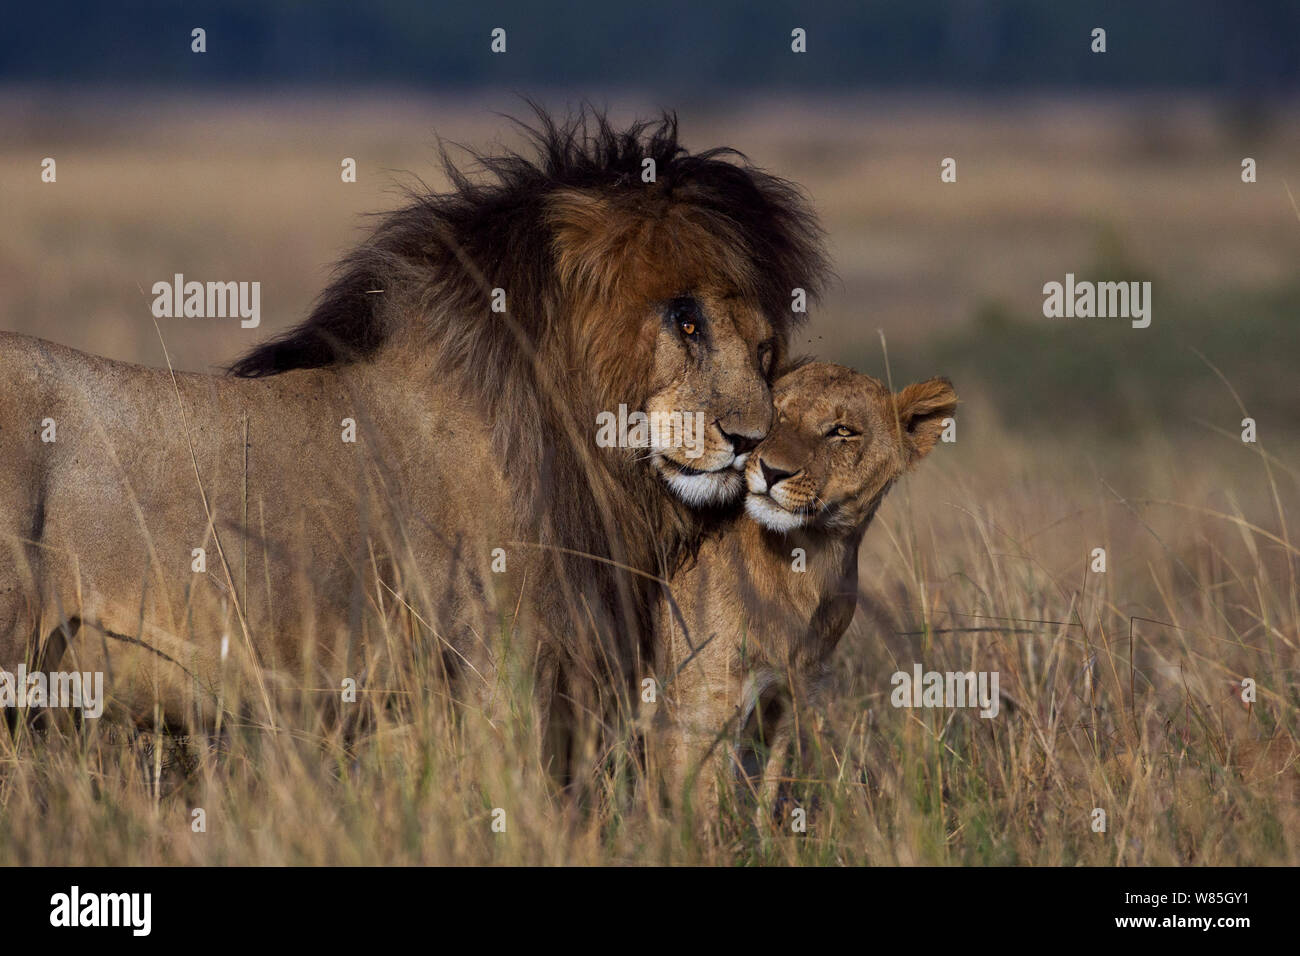 Lion (Panthera leo) d'hommes et de lionne (Panthera leo) dans le cadre de fréquentations nuzzling. Masai Mara National Reserve, Kenya. Banque D'Images